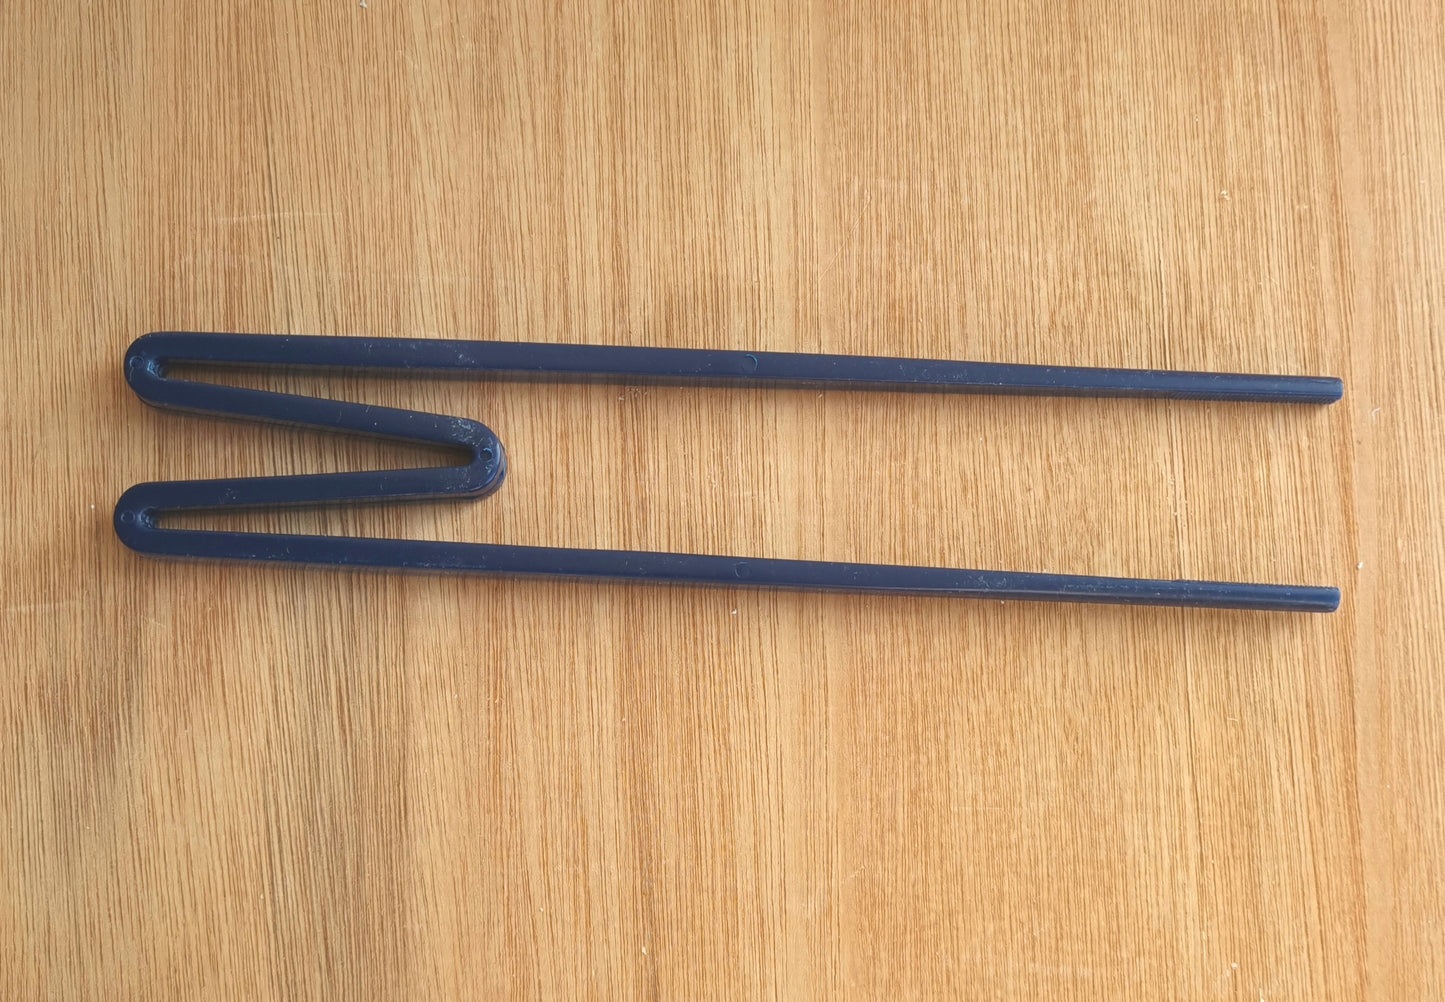 First chopsticks